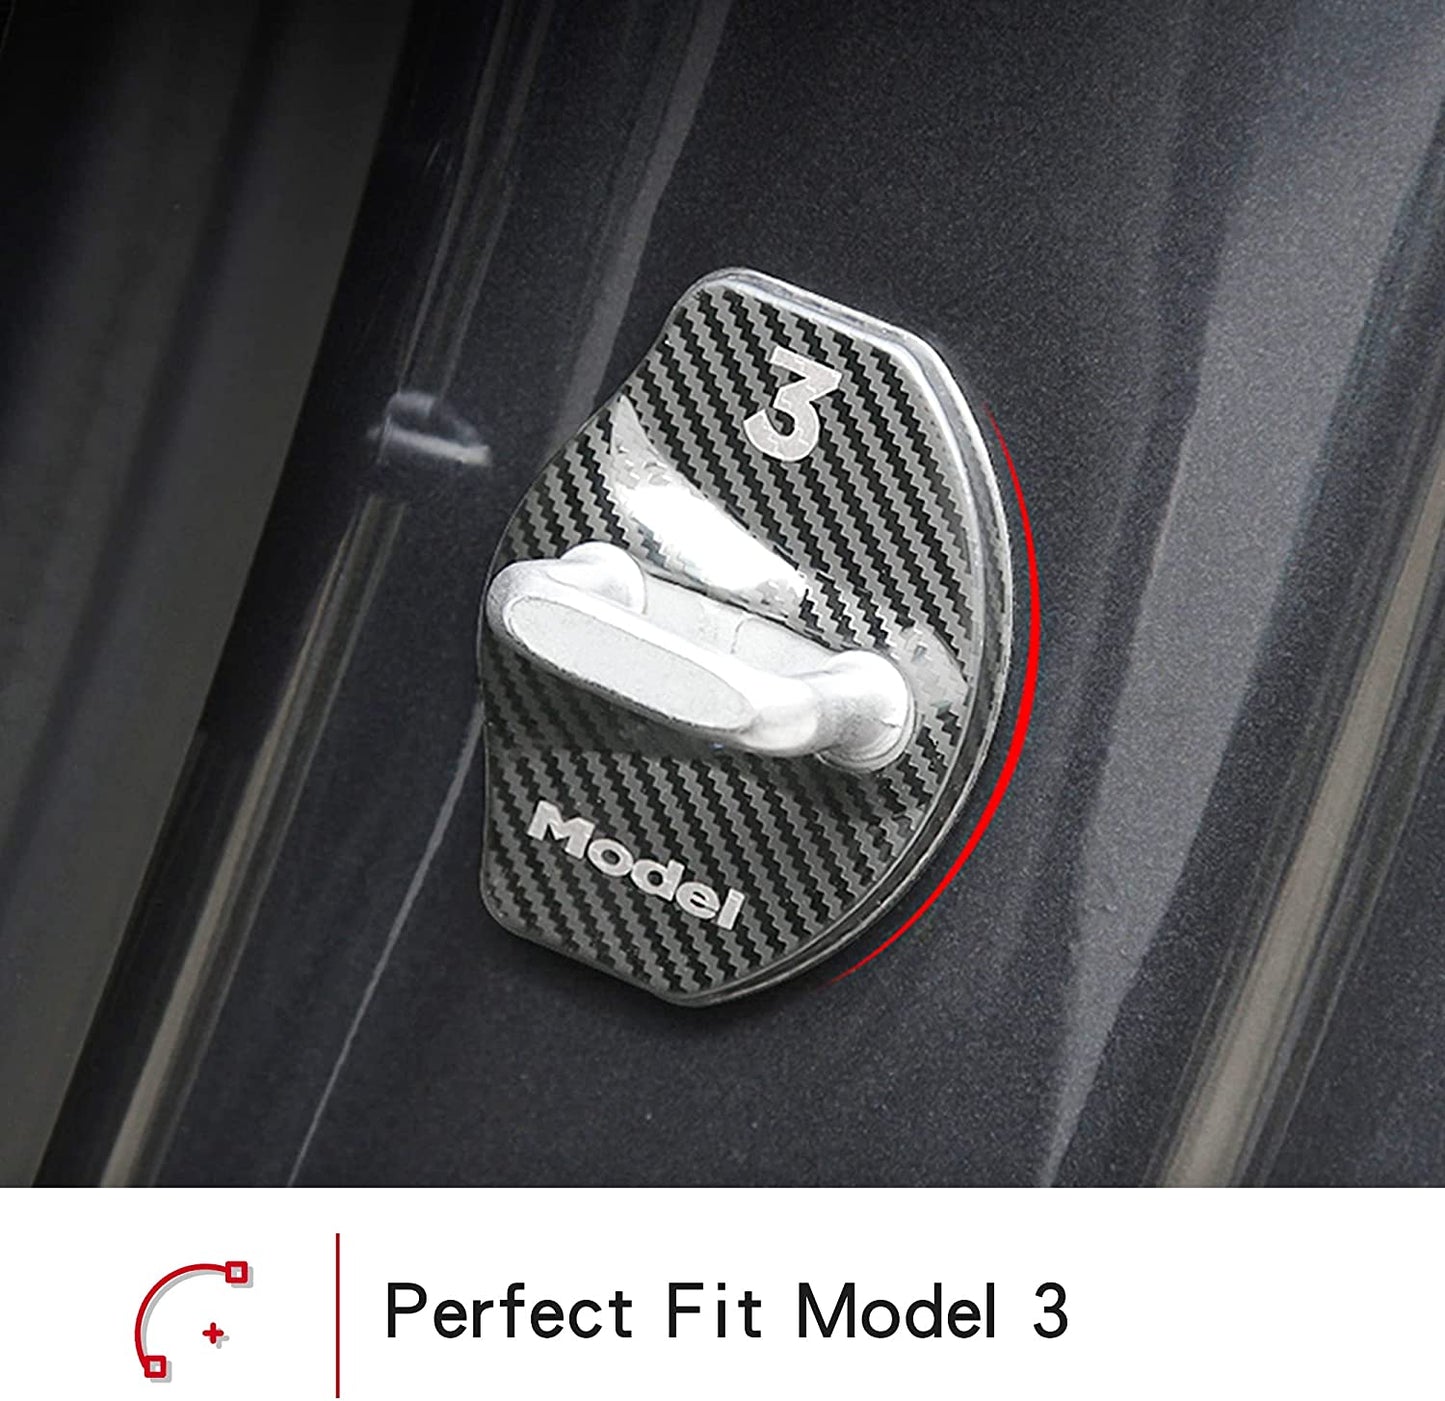 Tesla Model 3/Y Door Lock Cover Protector Accessories Latches Covers,Stainless Steel Door Stopper 4 Pcs(Carbon Fiber)